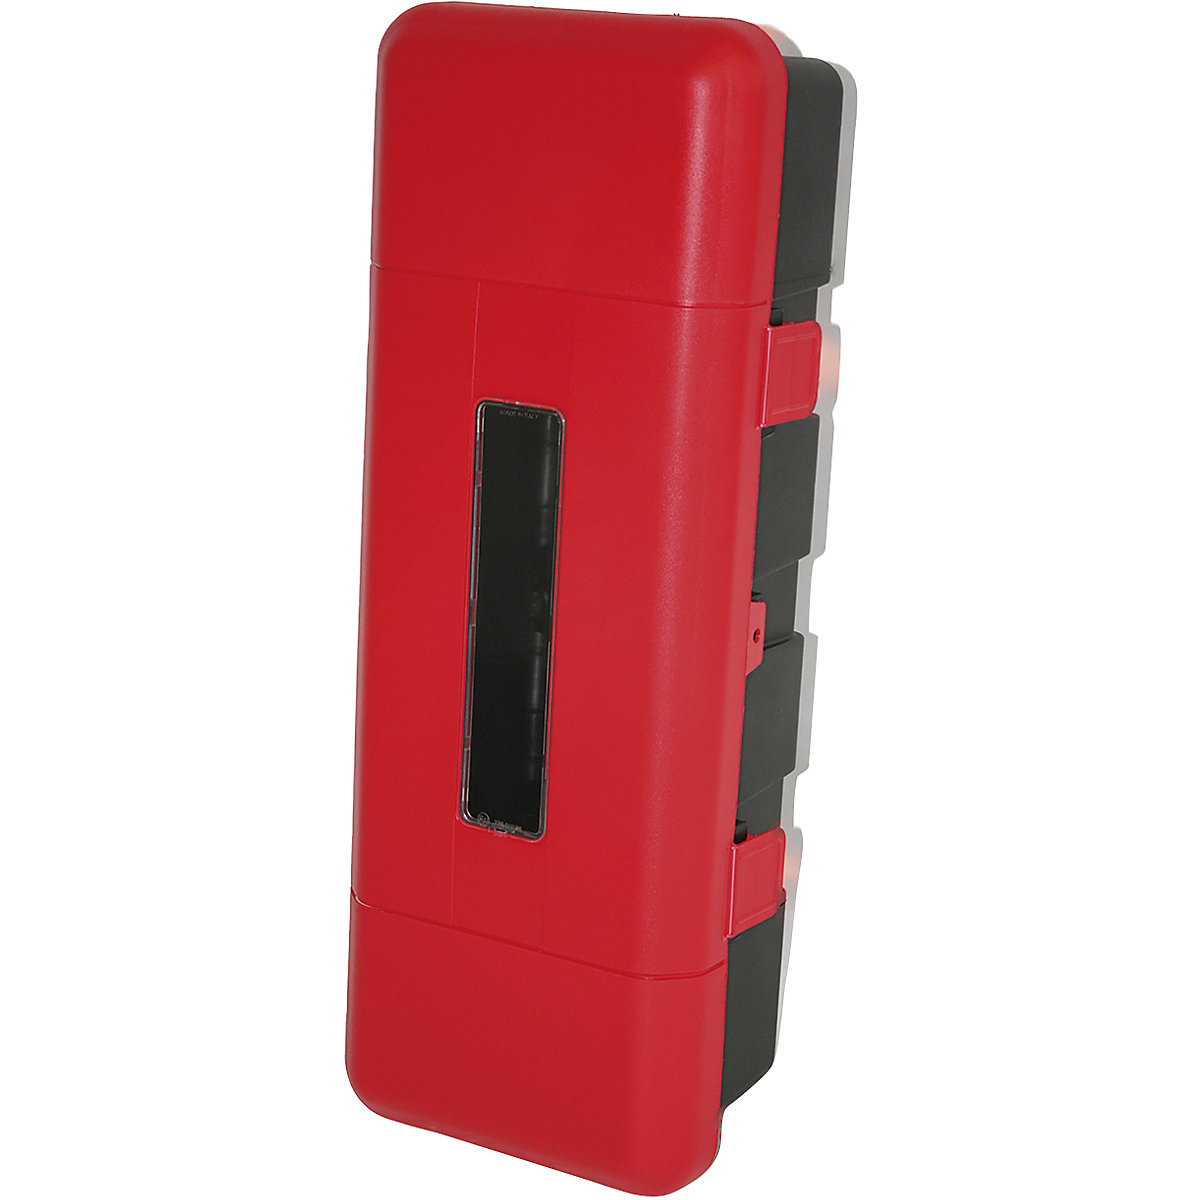 Kutija za aparat za gašenje požara, u crnoj-crvenoj boji